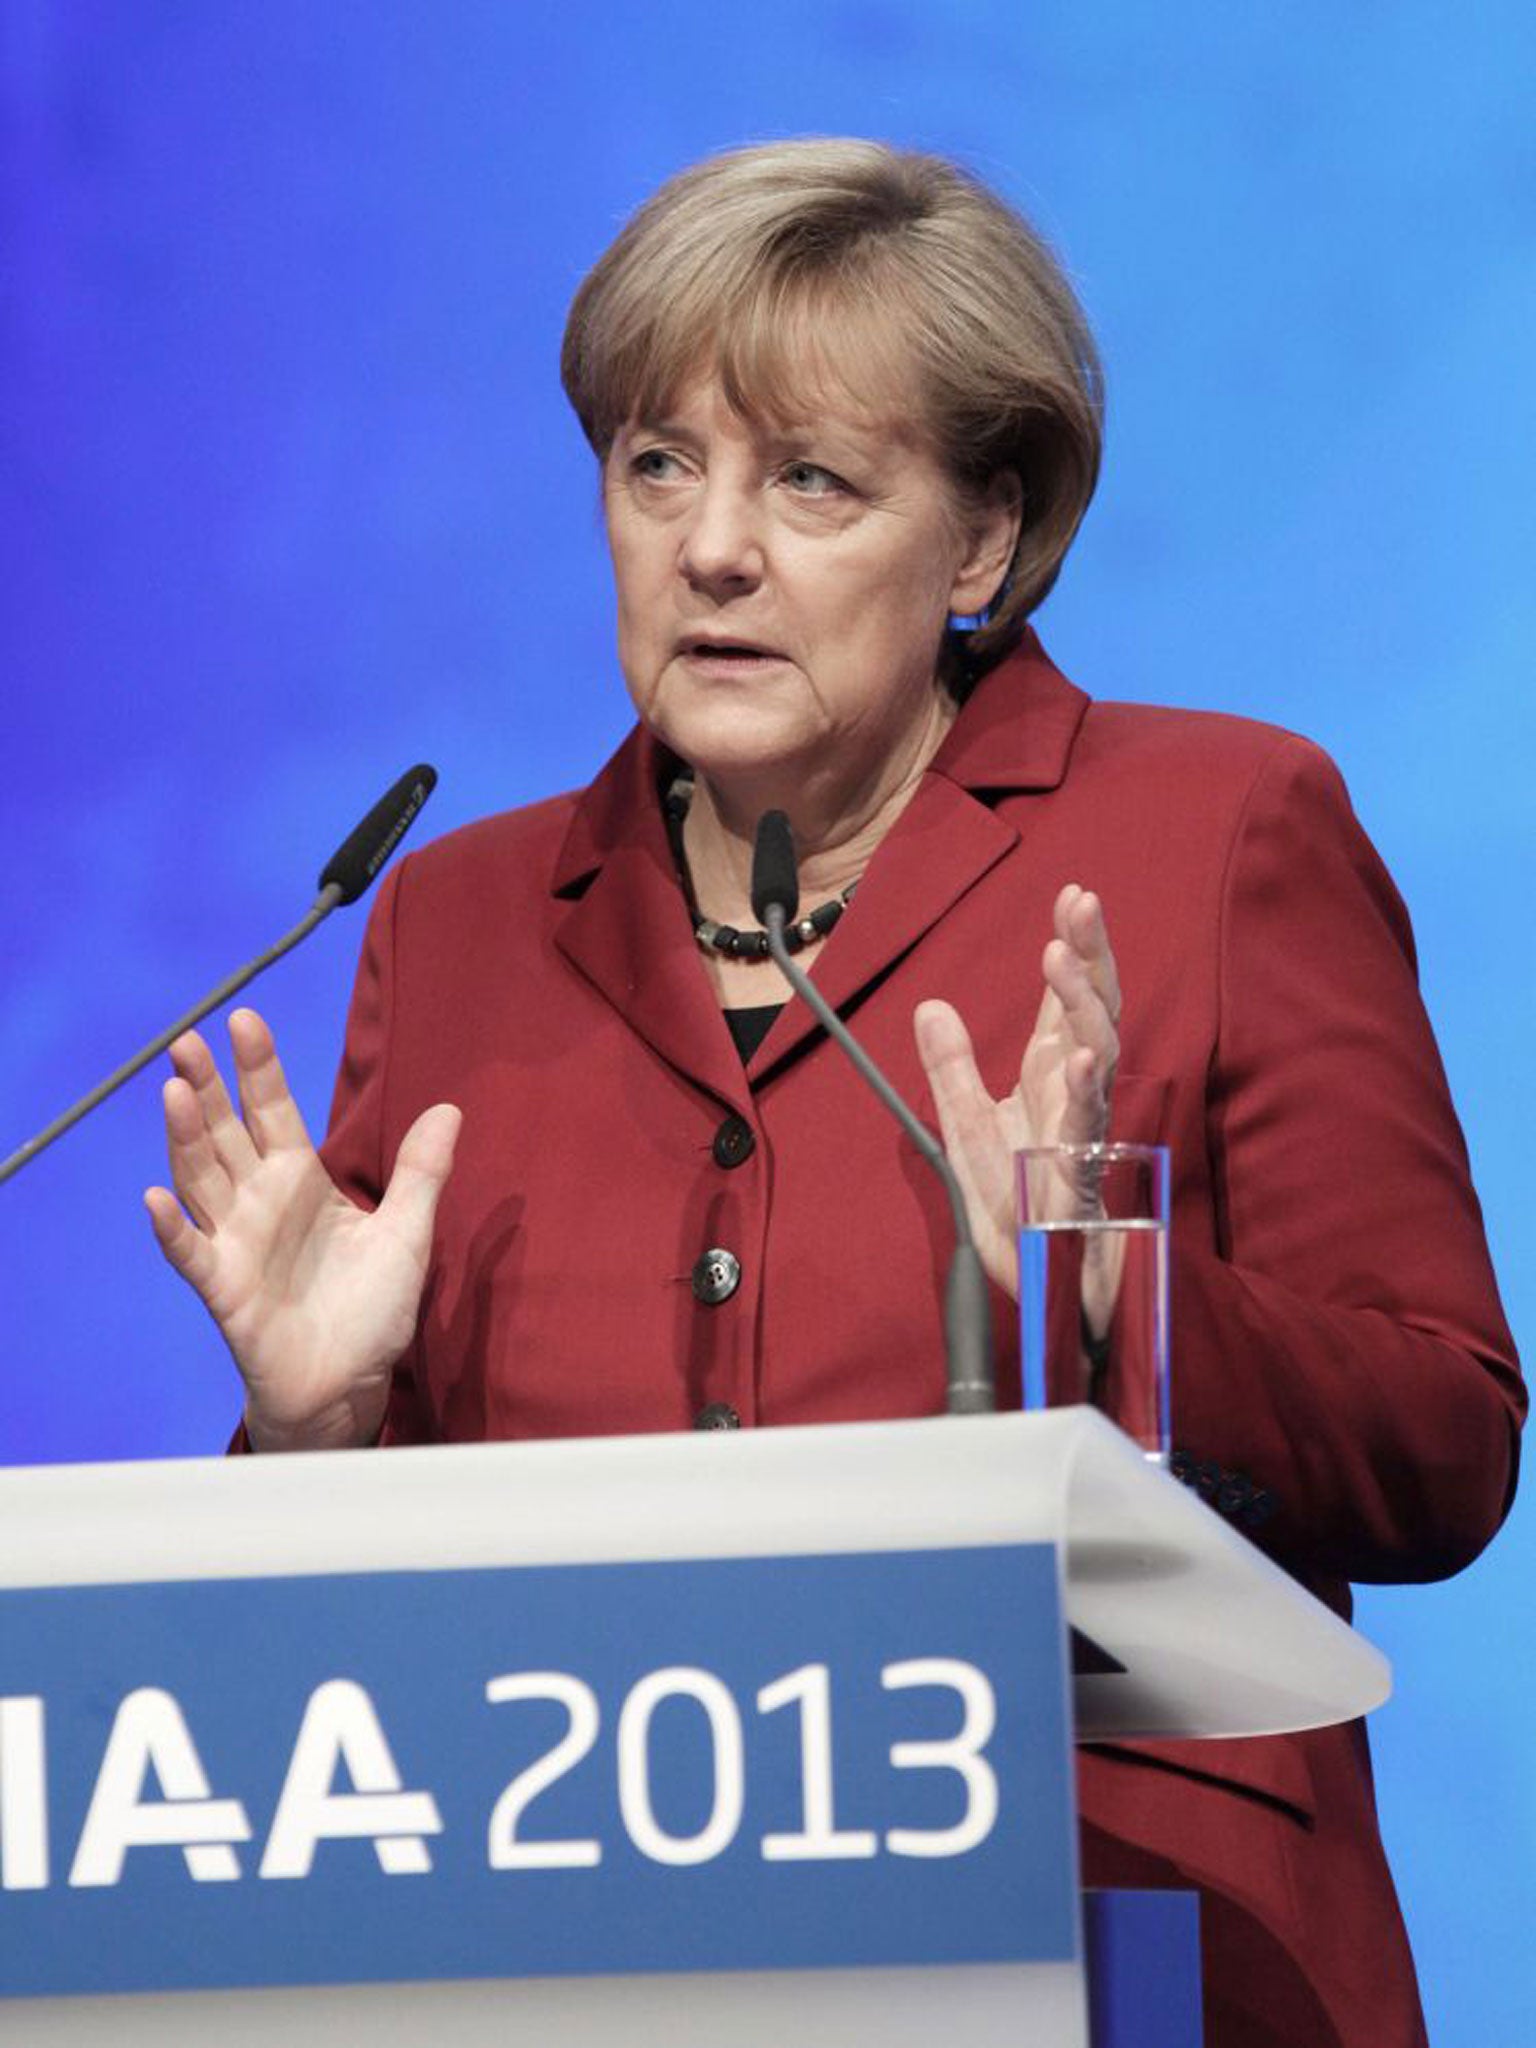 Angela Merkel clashed with CSU leader Horst Seehofer